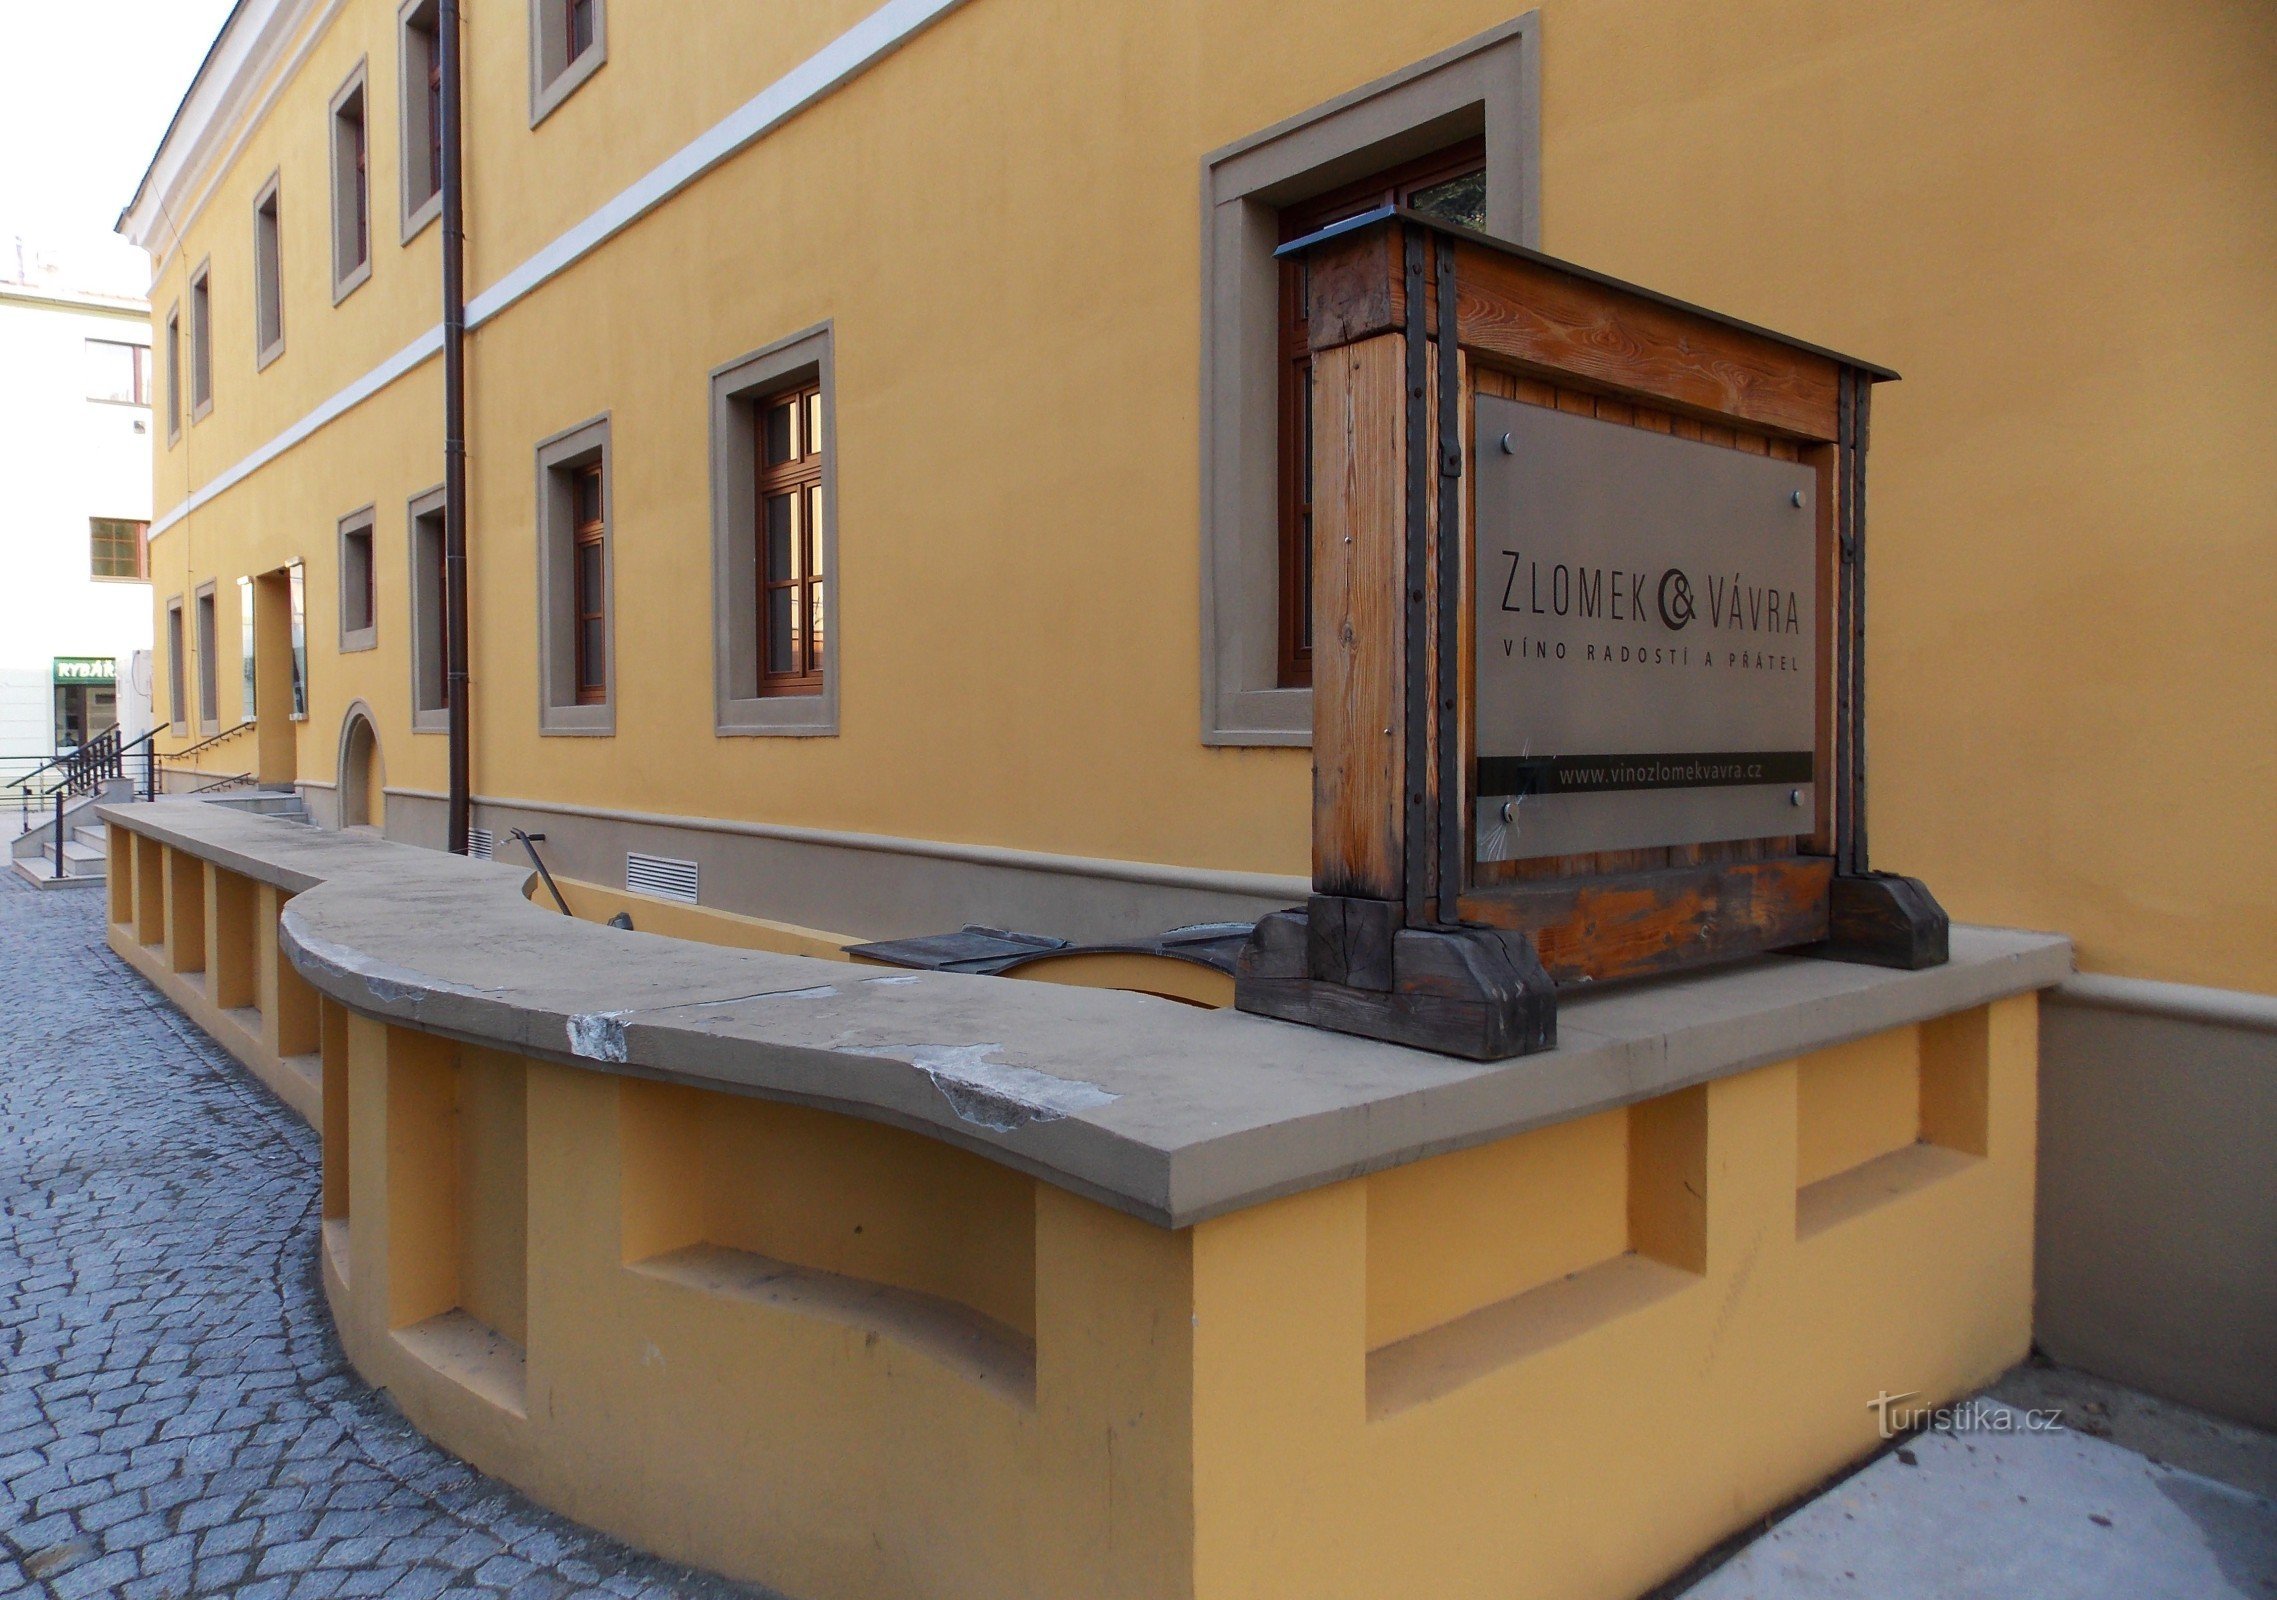 Galeria de vinhos eslovacos em Uh. Hradišti